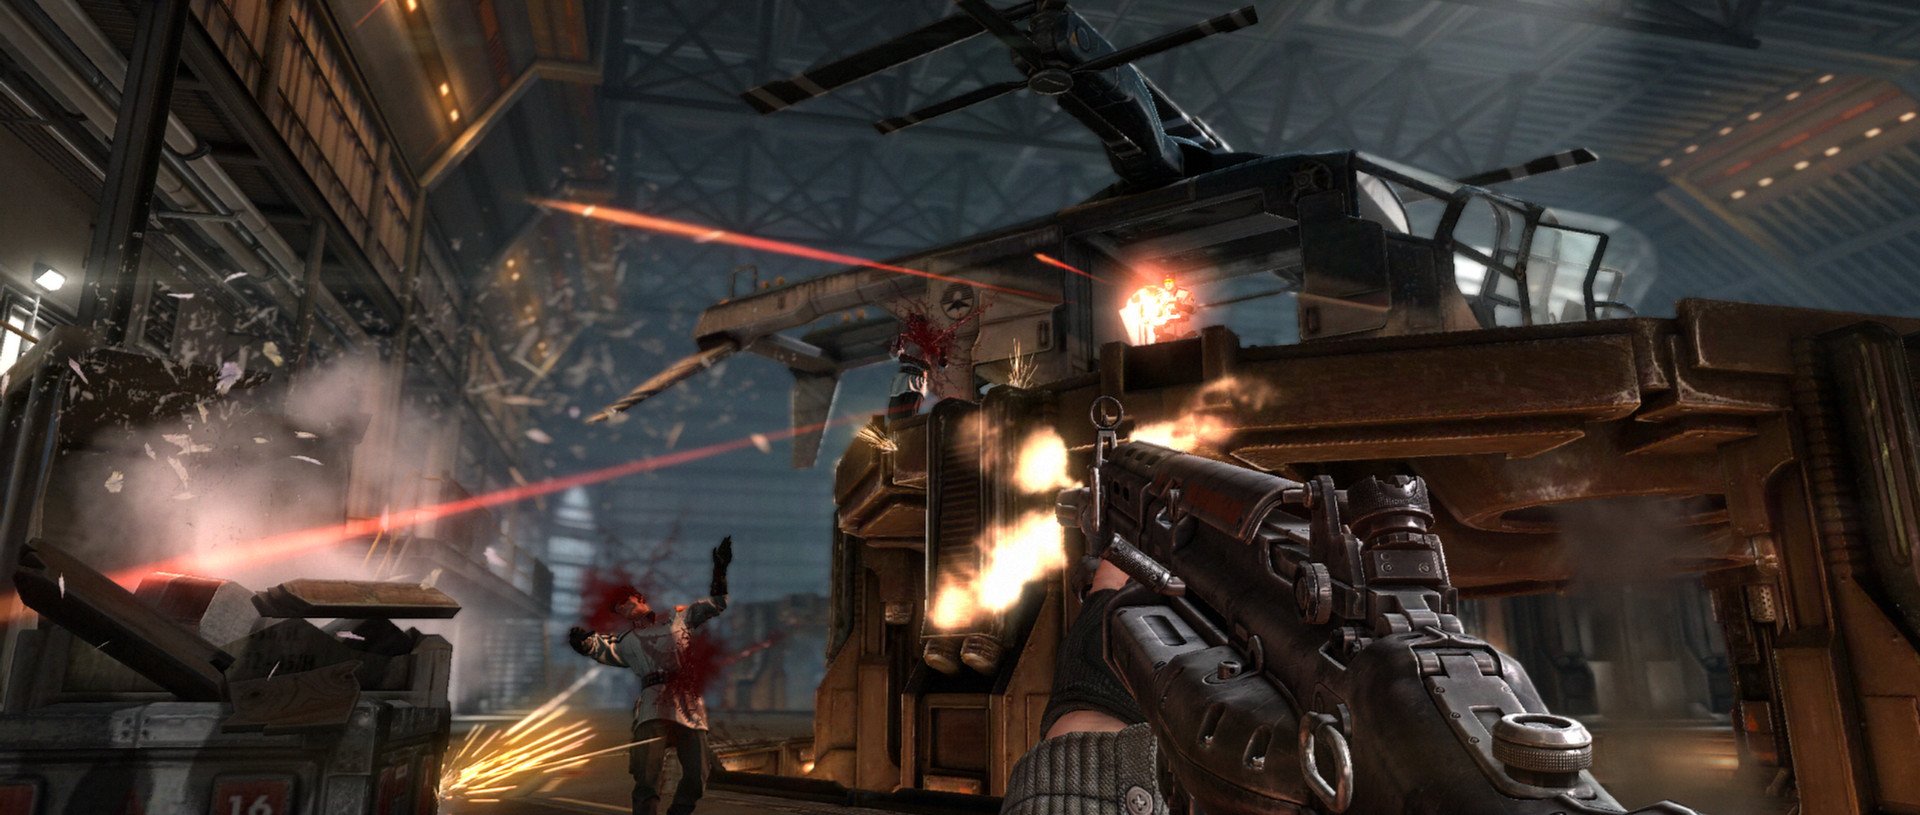 Скриншот 2 к игре Wolfenstein: The New Order [GOG] (2014) PC | Лицензия